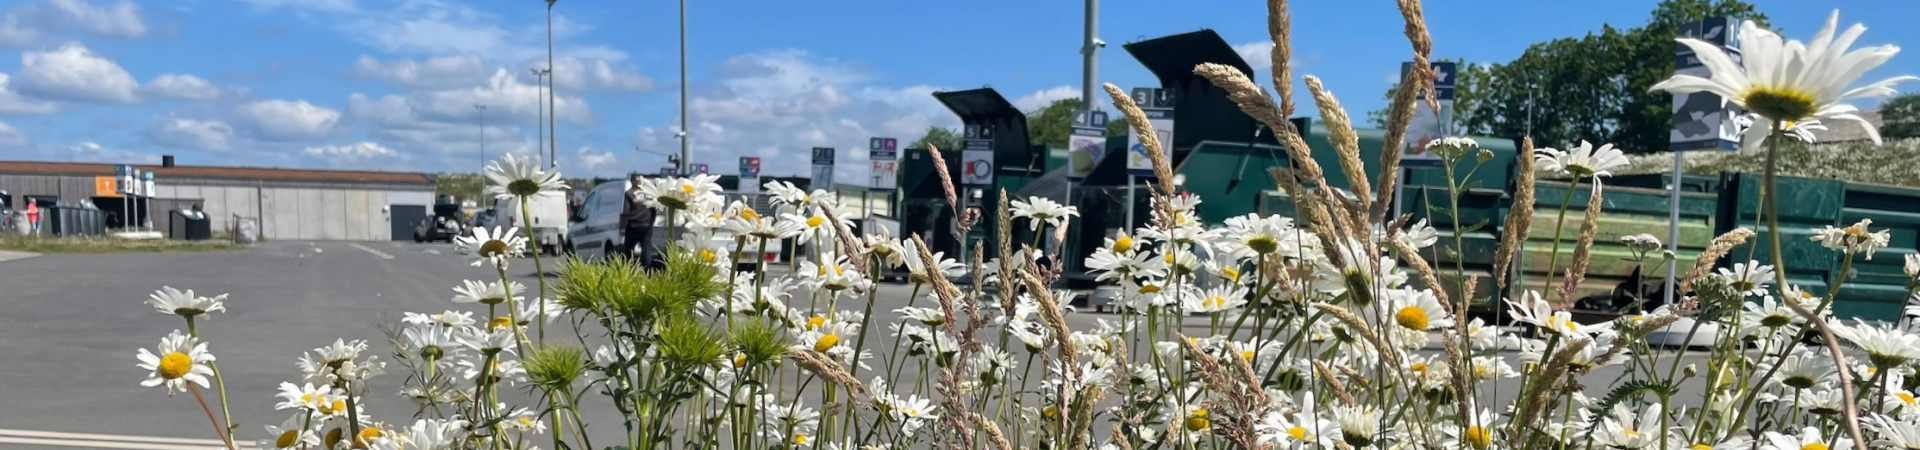 Blomster i forgrunden med grønne containere på genbrugspladsen i baggrunden. 